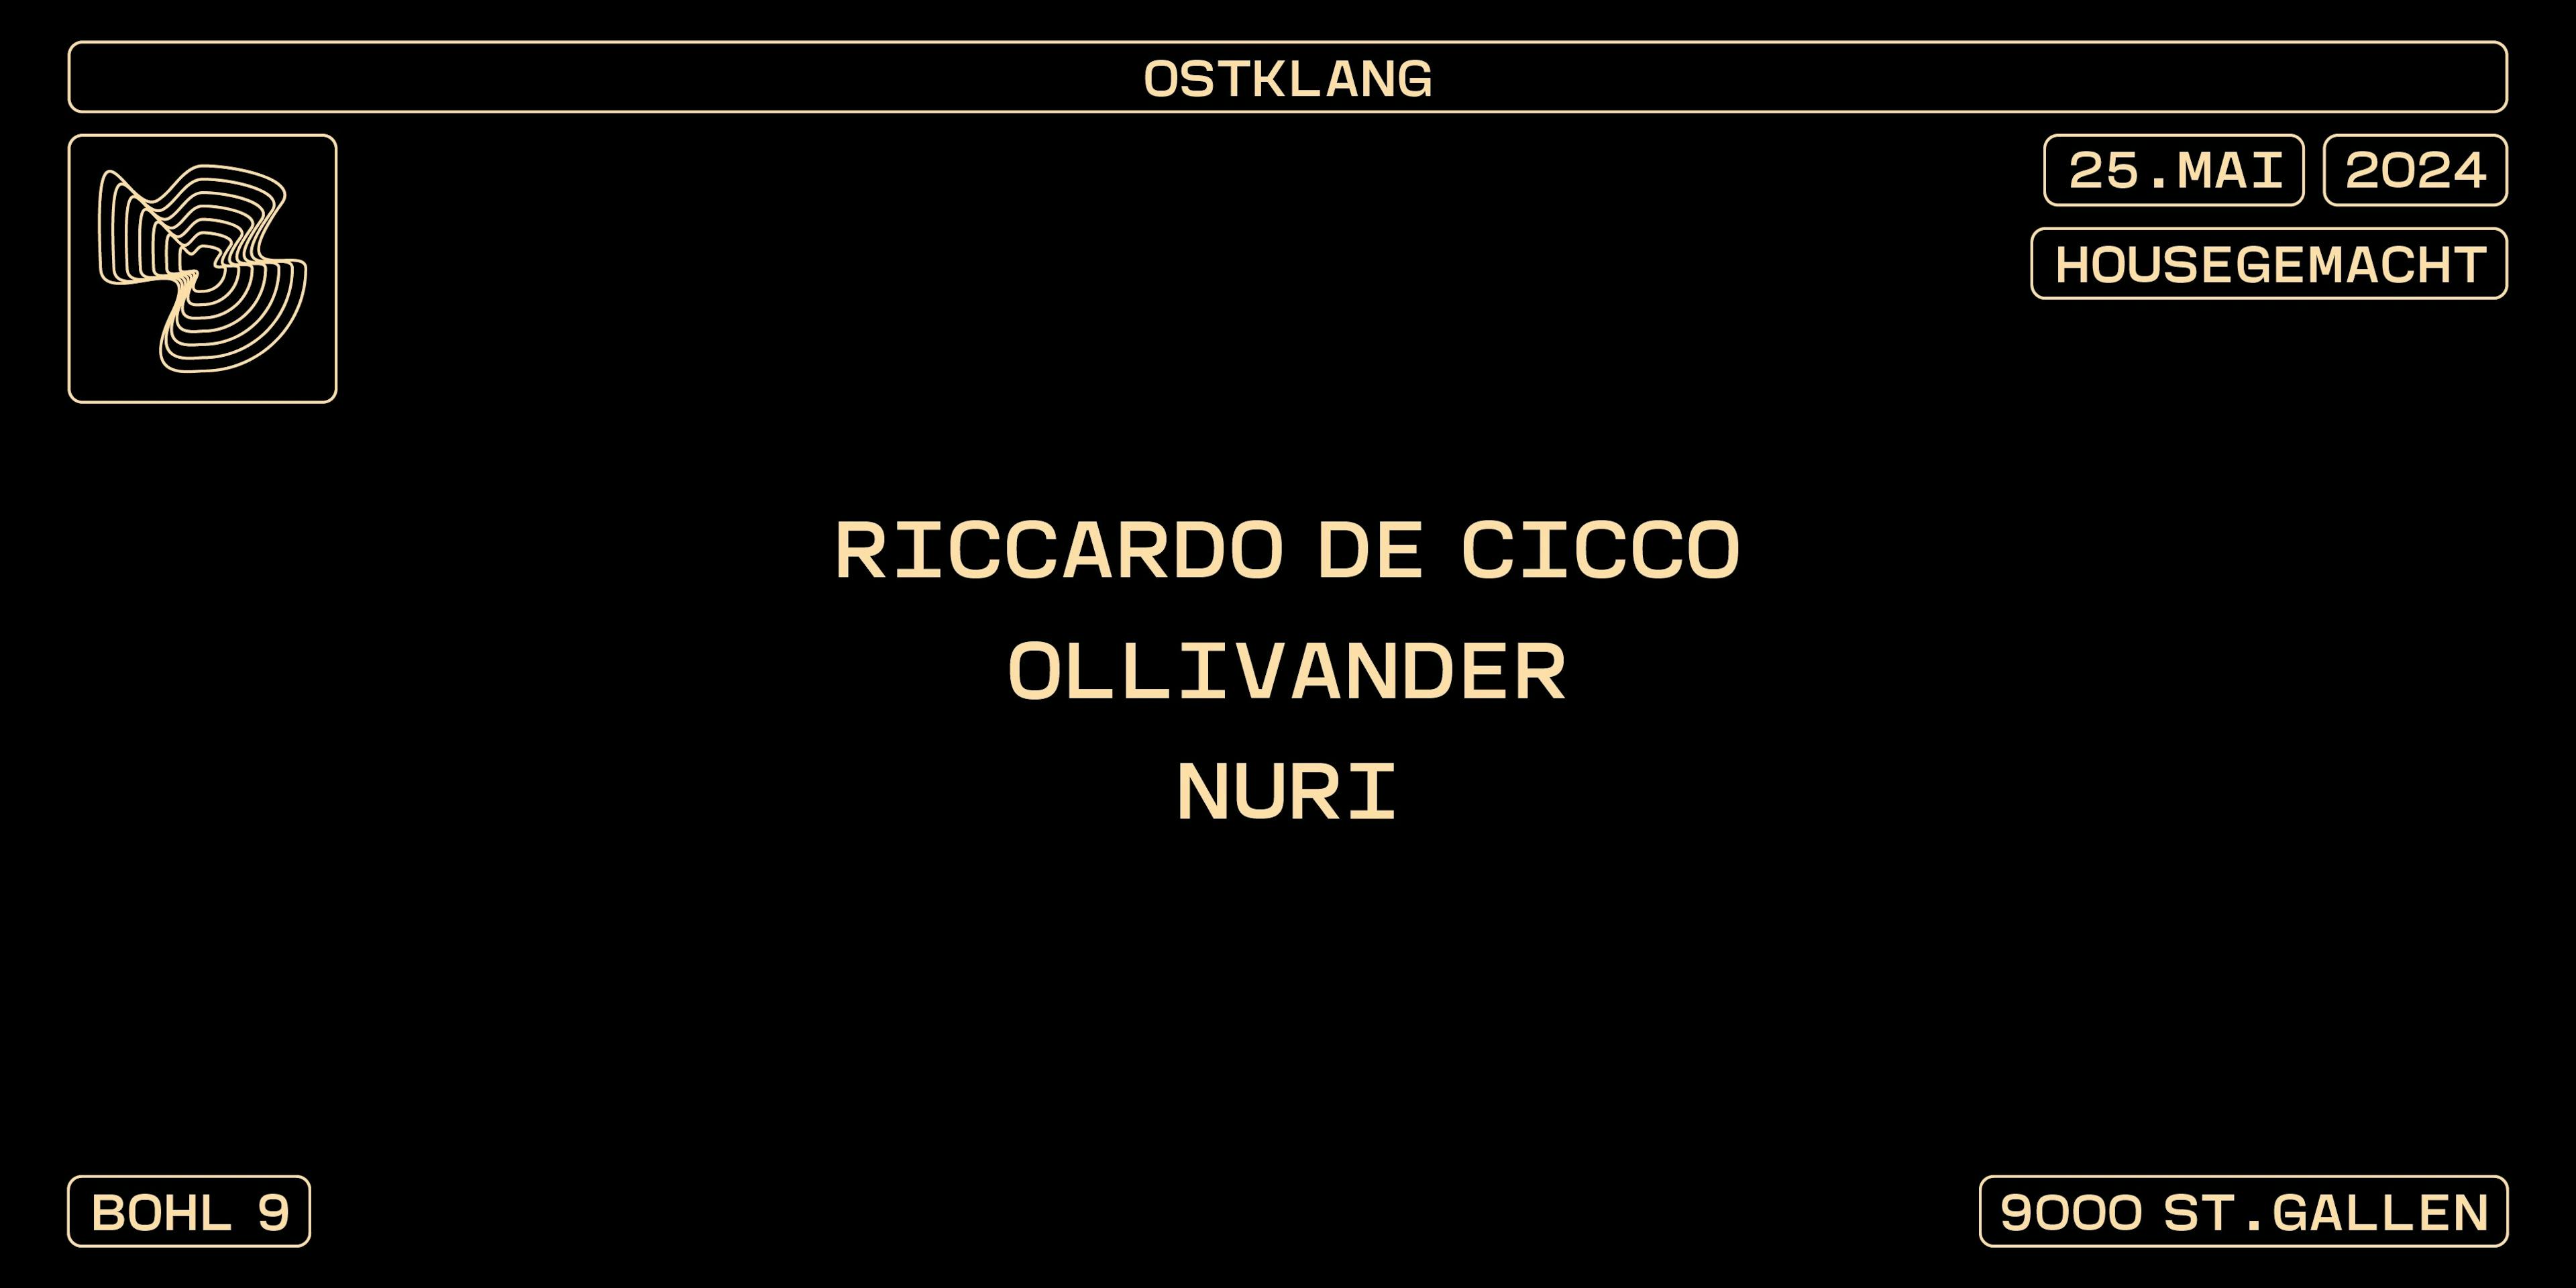 Titelbild HOUSEGEMACHT mit RICCARDO DE CICCO, OLLIVANDER, NURI